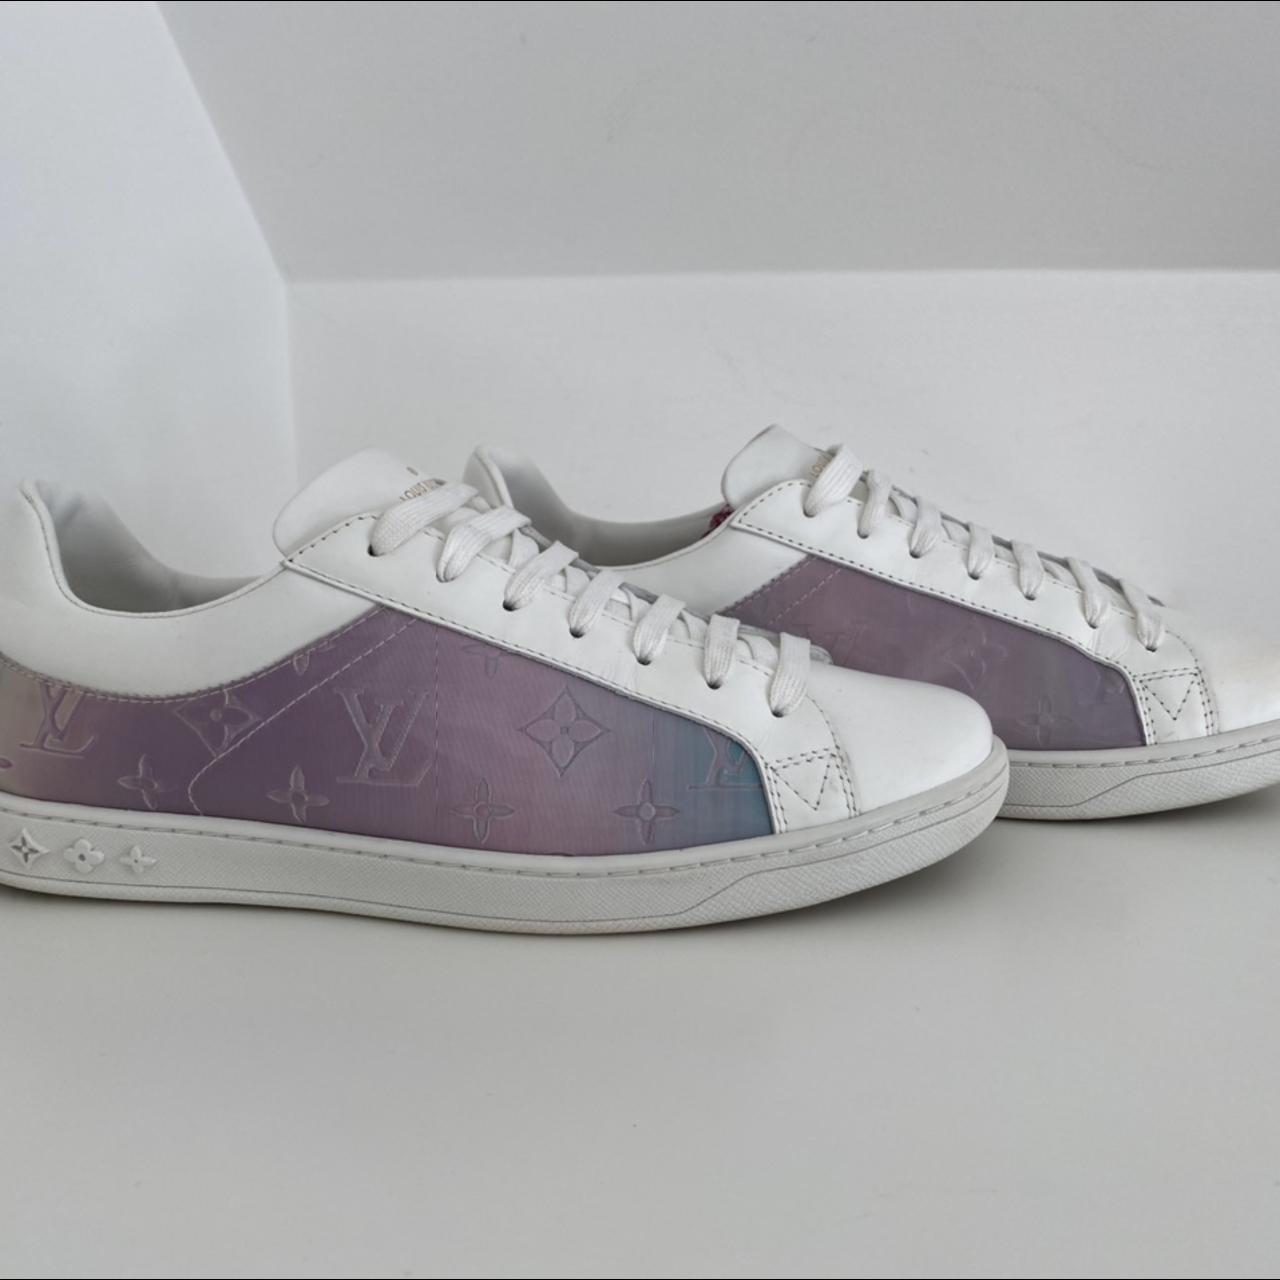 Louis Vuitton, Shoes, Louis Vuitton Slides Holograph